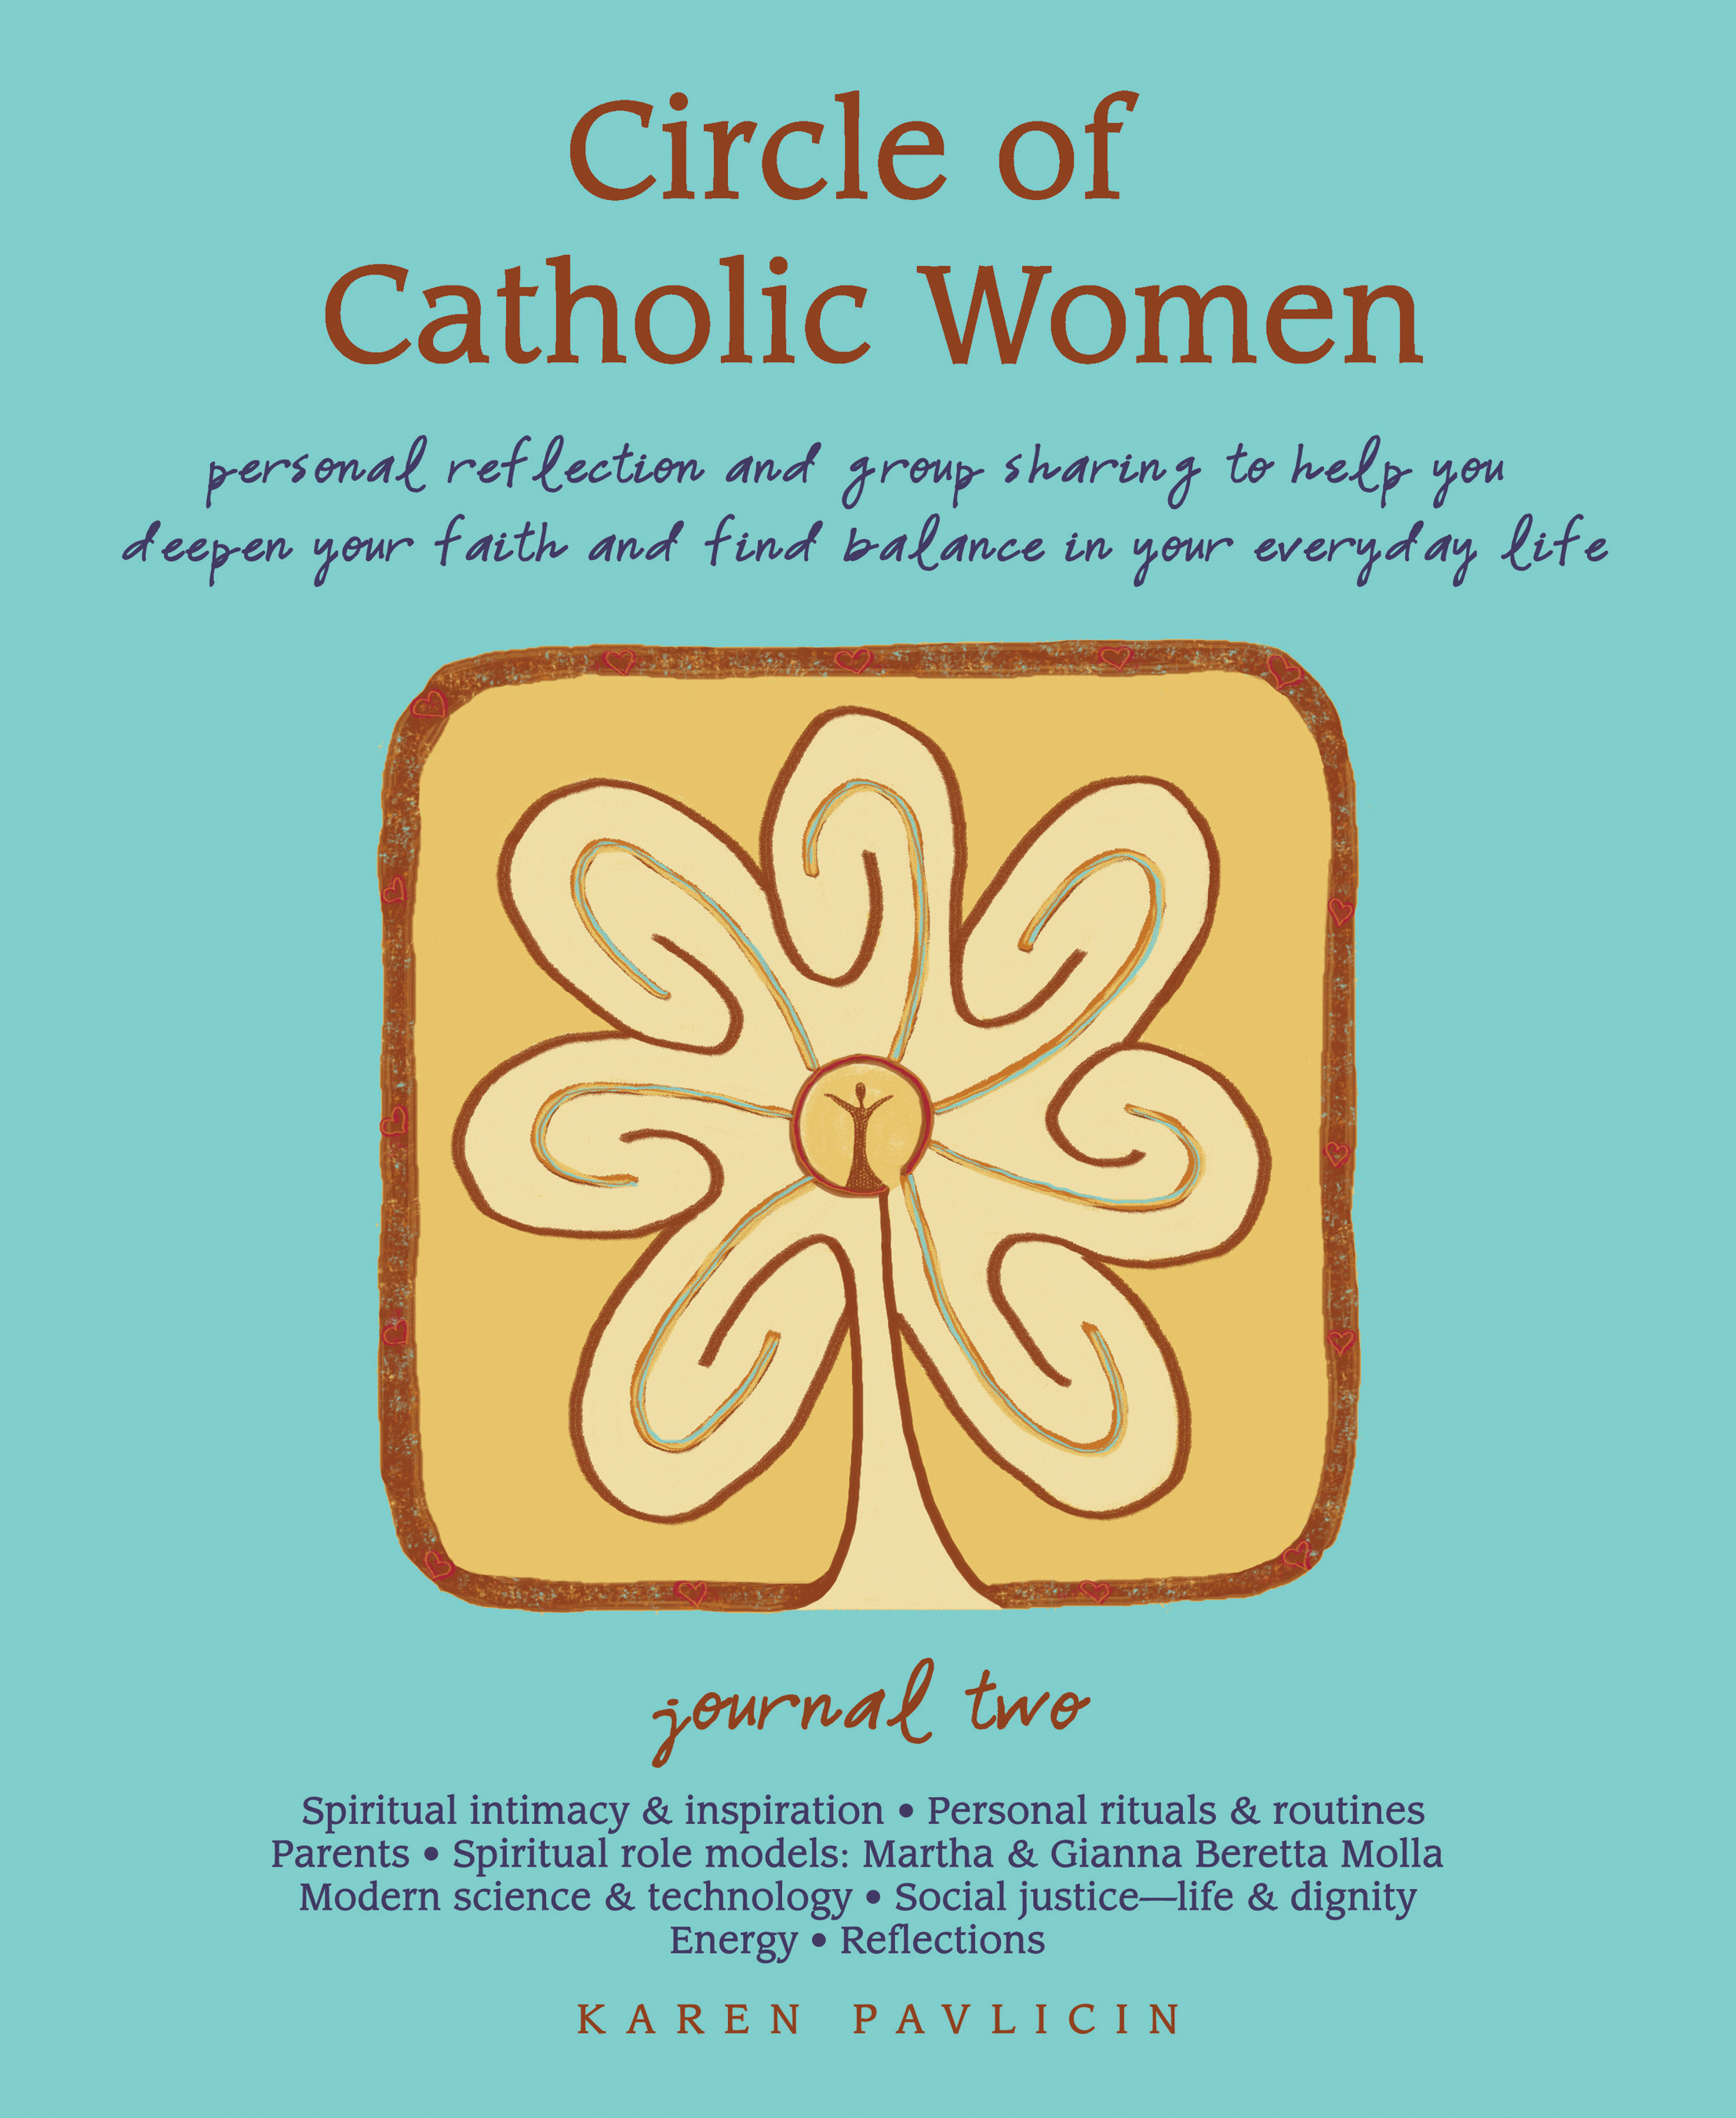 Circle of Catholic Women Journal Two by Karen Pavlicin